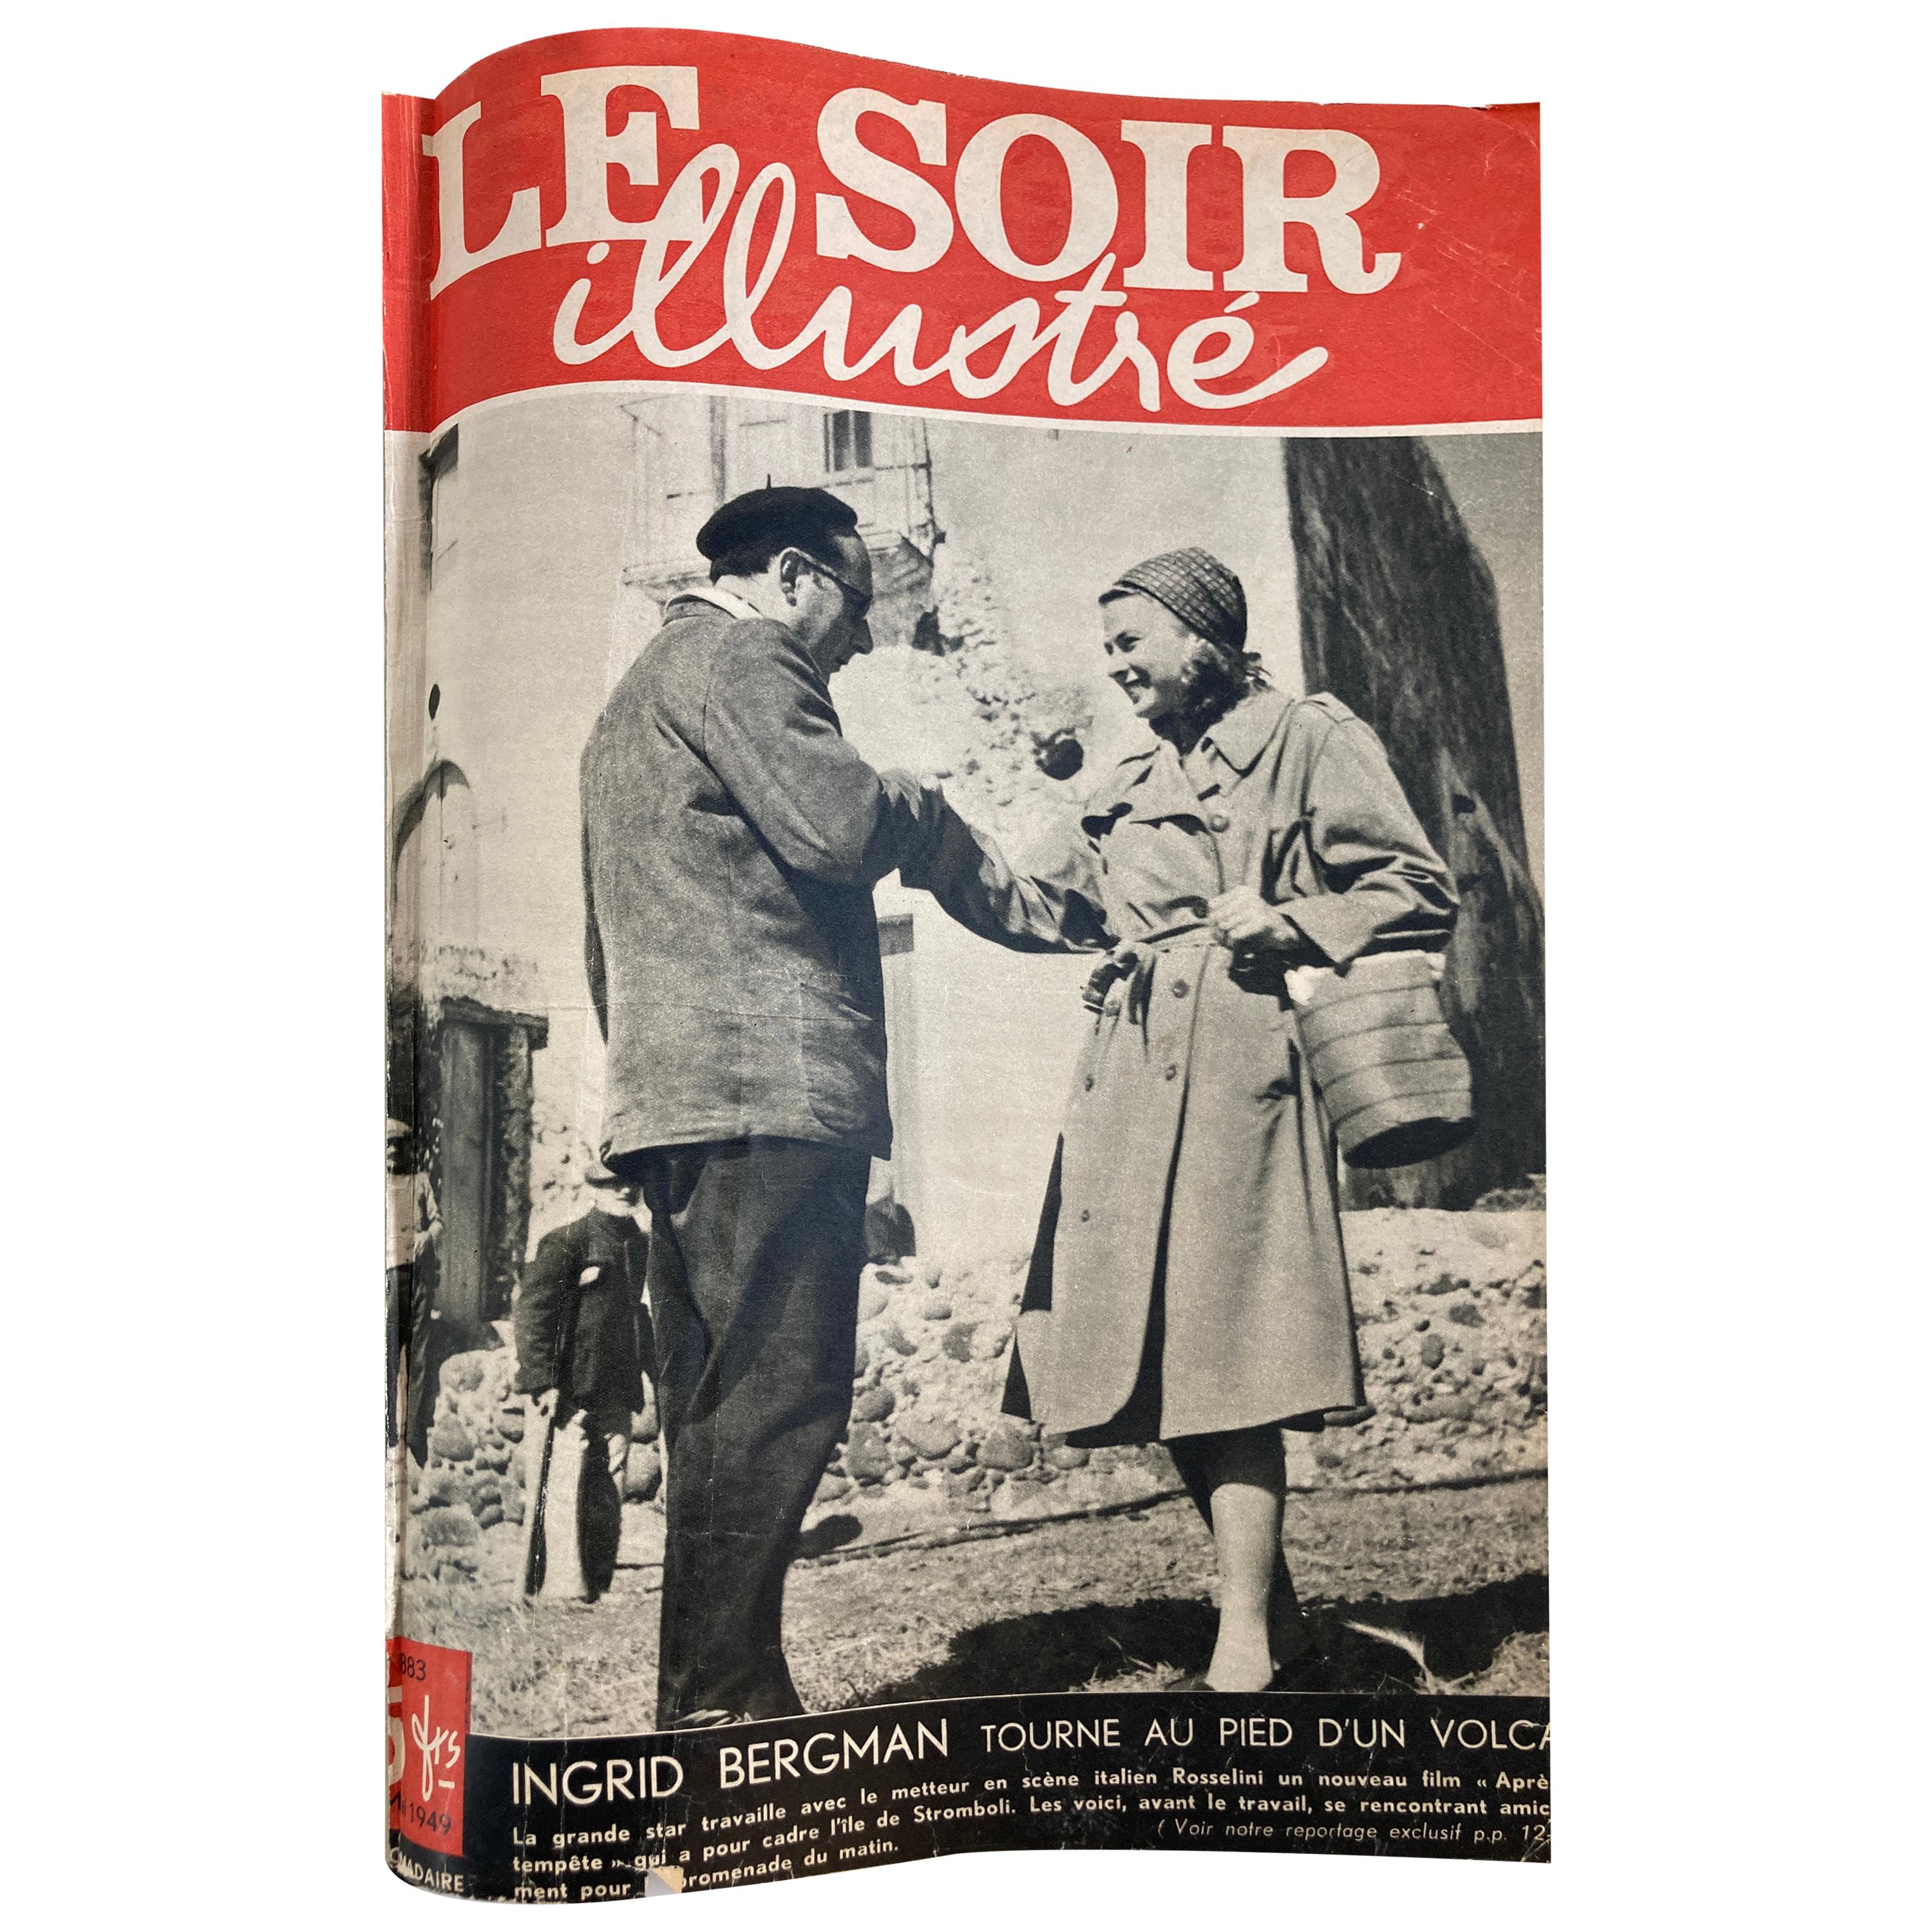 Le Soir Illustre, mai 1949 à septembre 1949 Magazines français Paris France